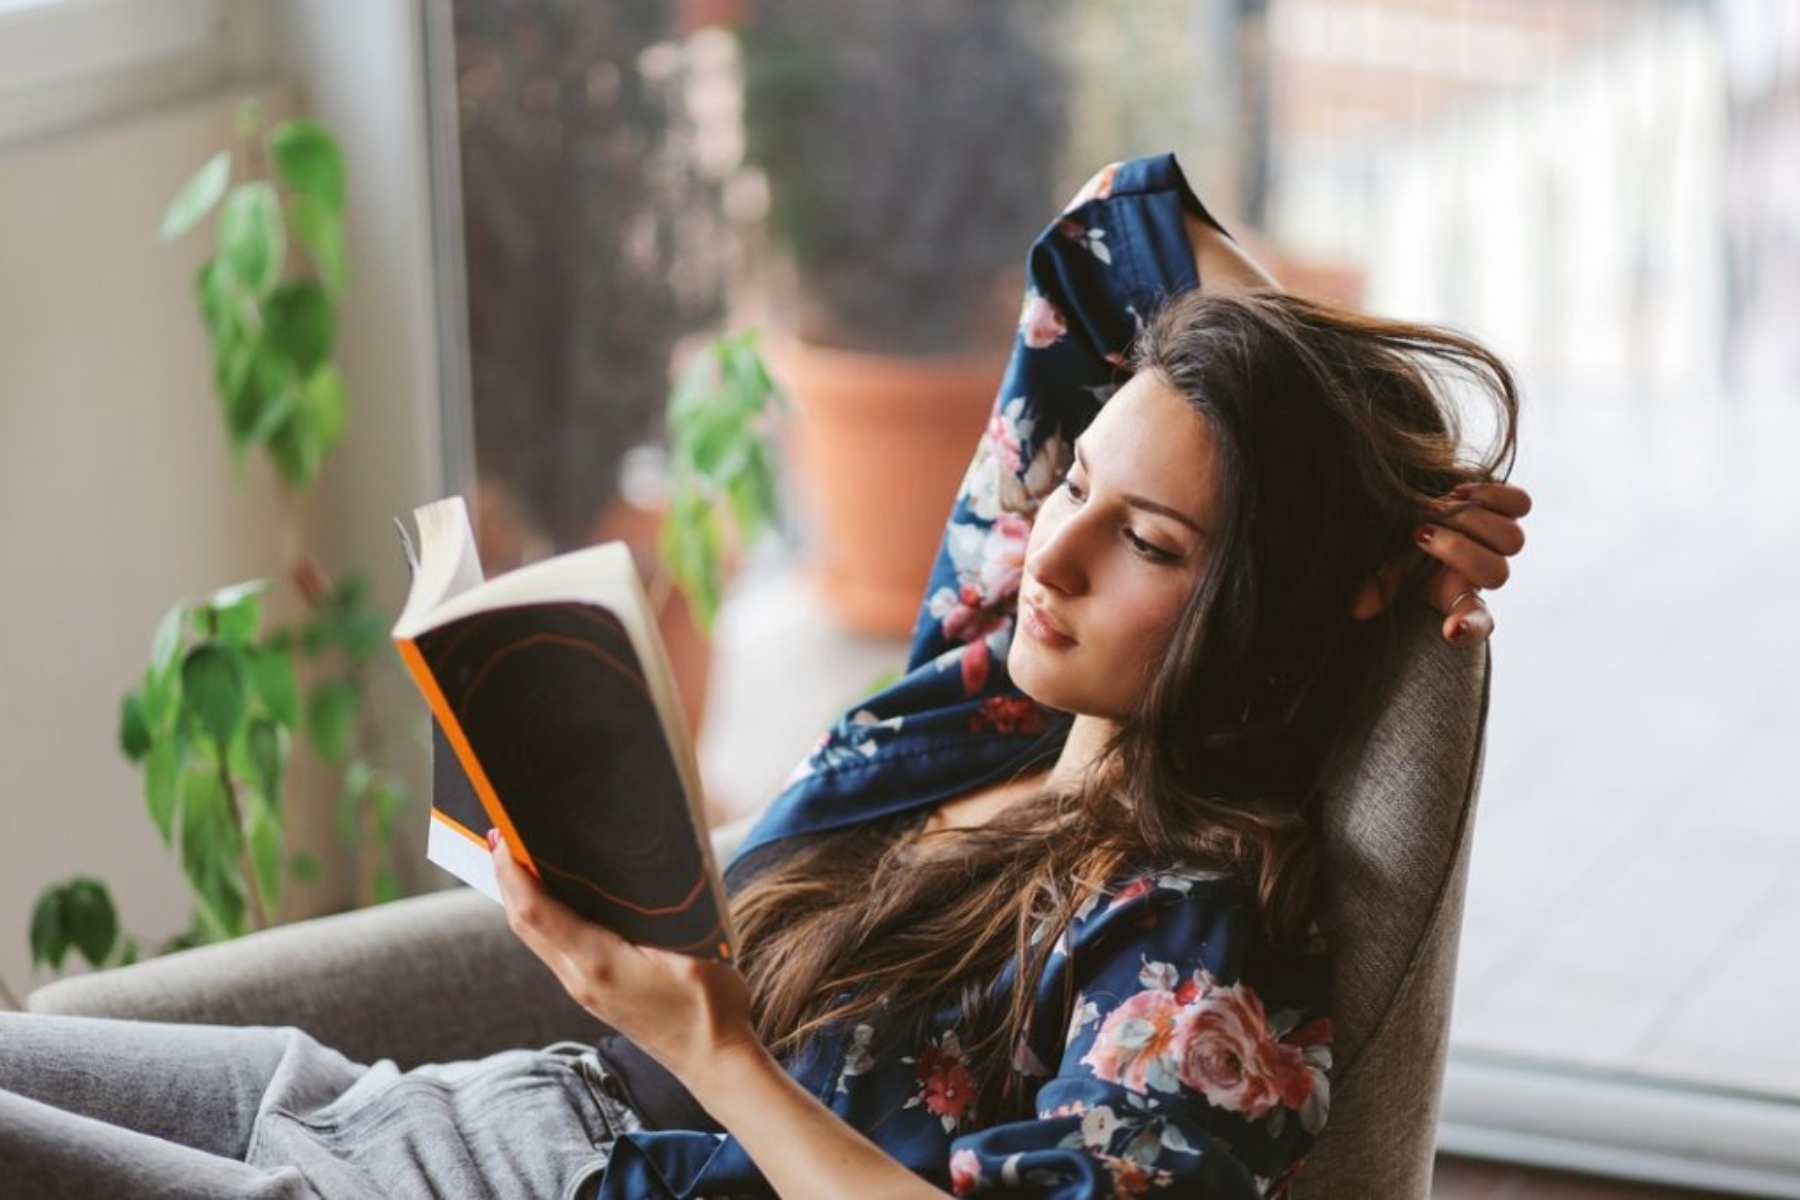 Διάβασμα: Γιατί το διάβασμα μας κάνει πιο ελκυστικούς και sexy;